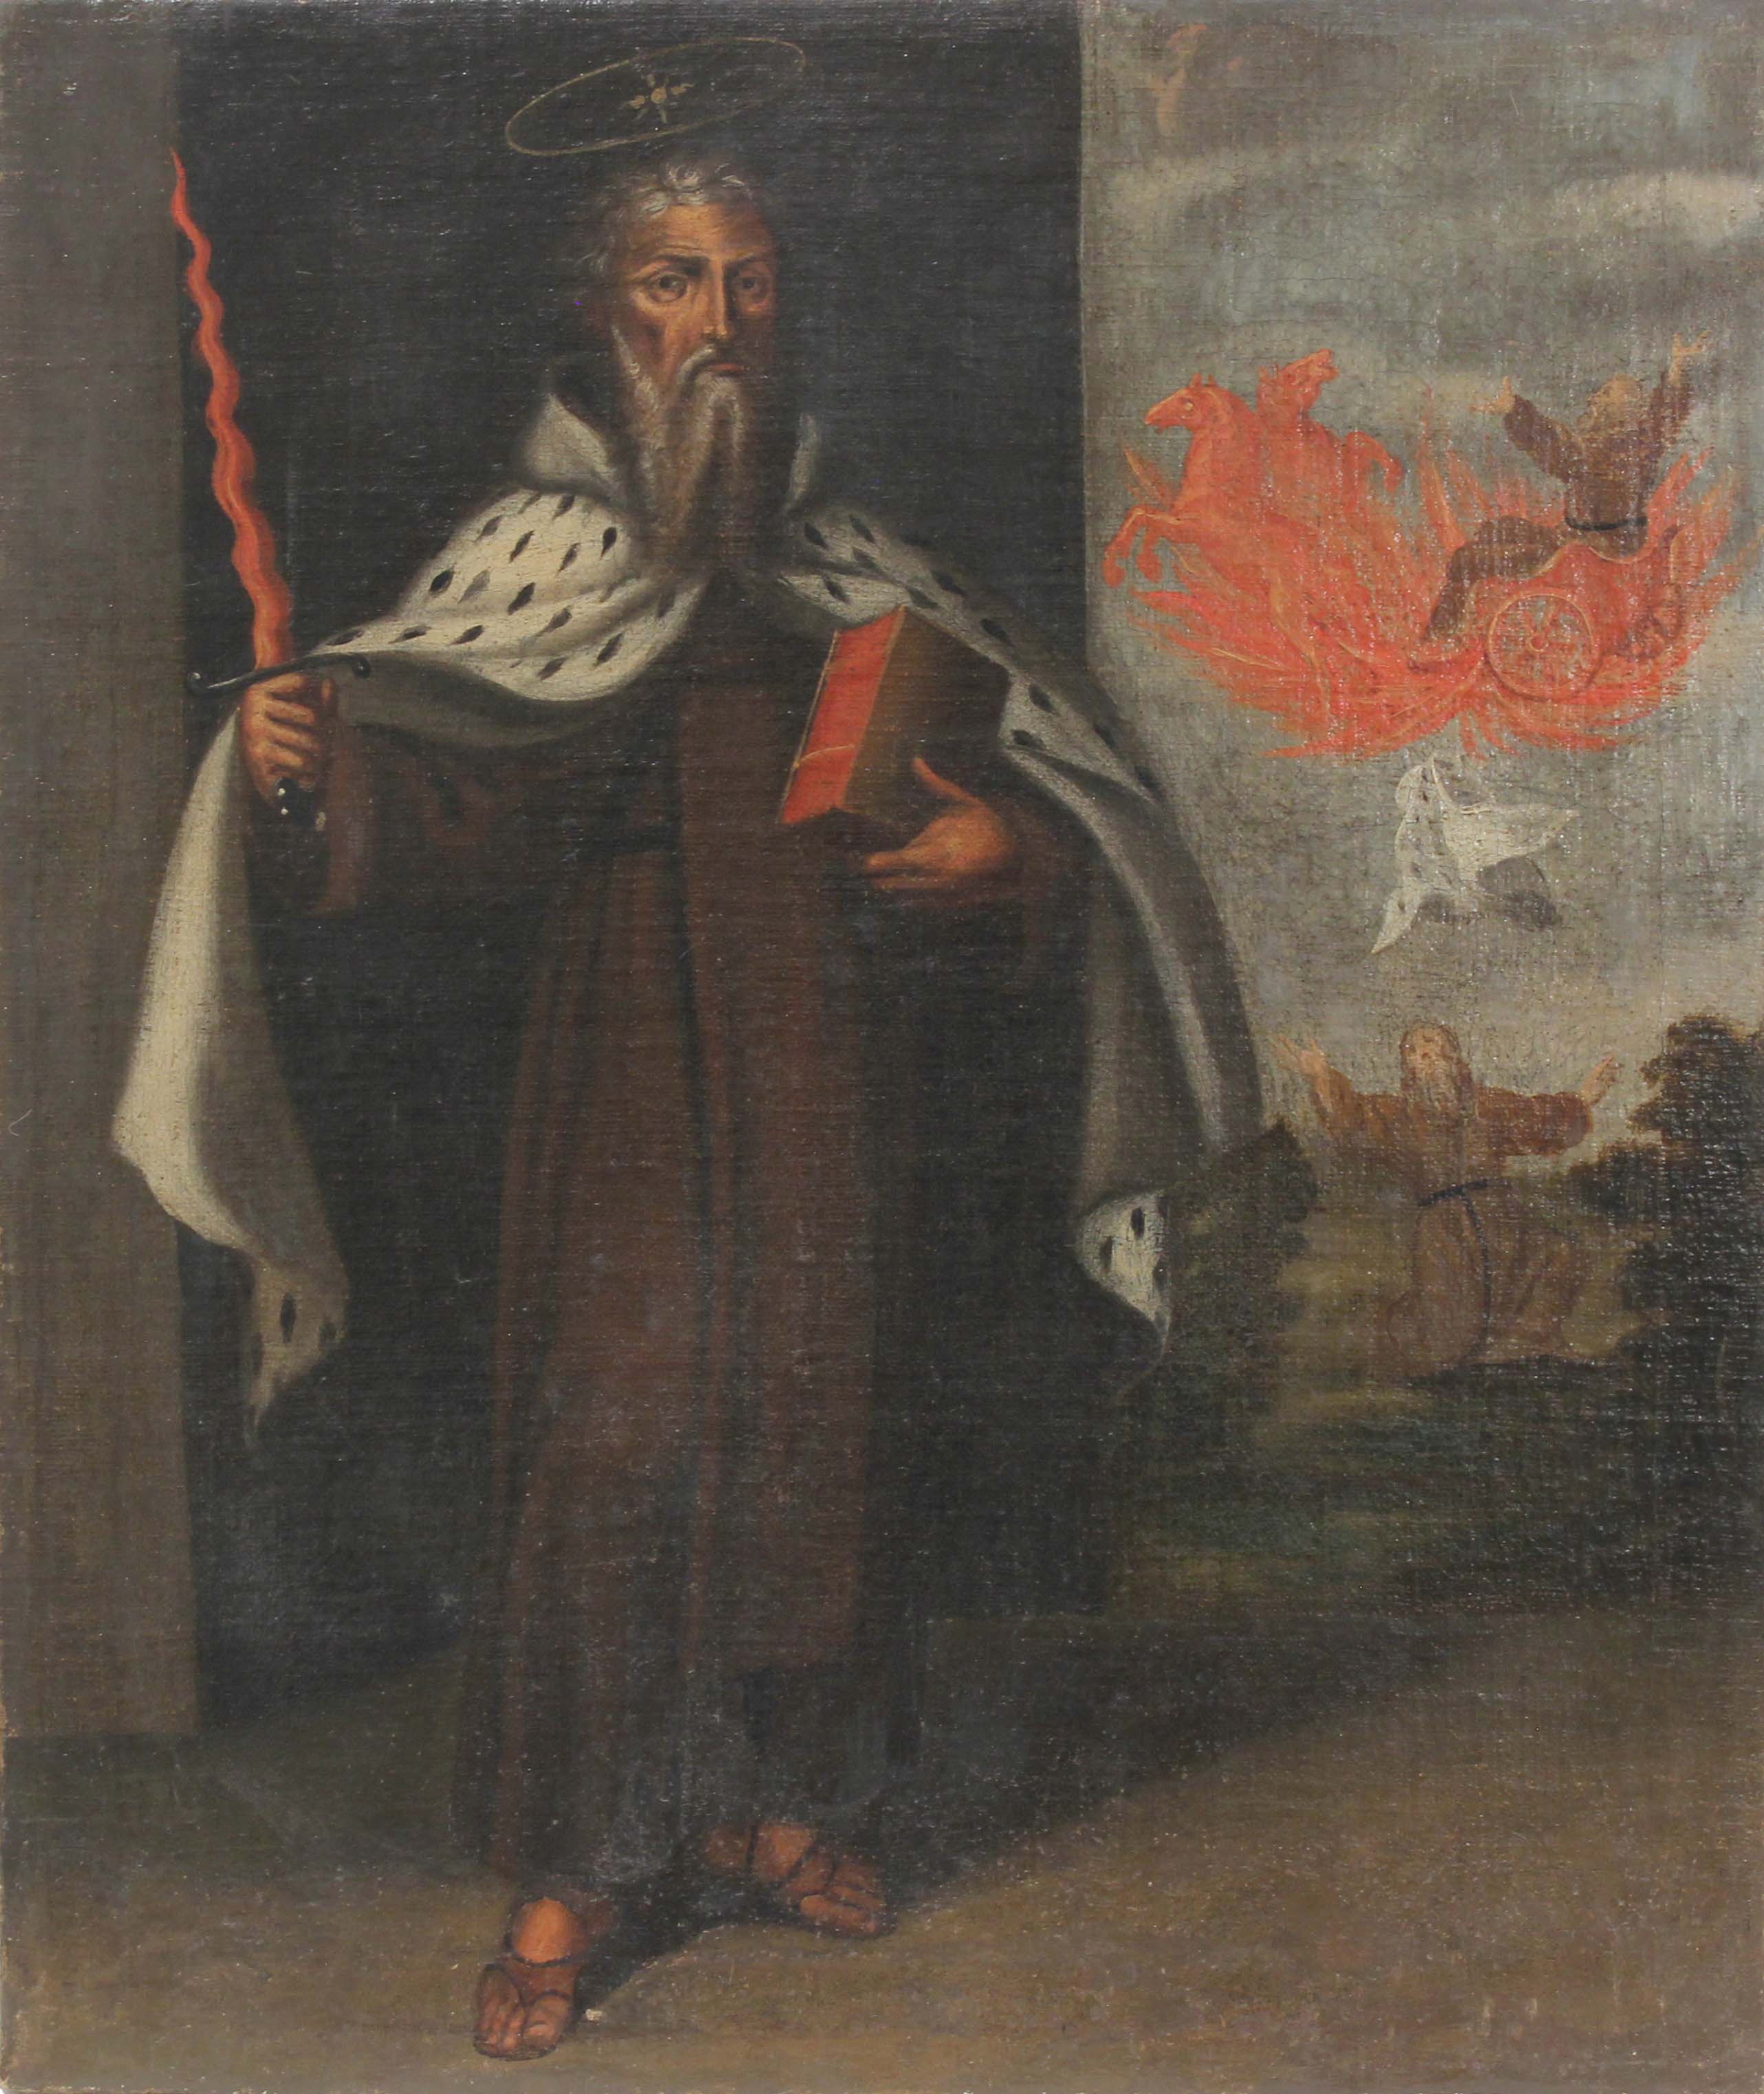 ESCUELA EUROPEA, SIGLO XVII-XVIII. "SANT ELÍAS".